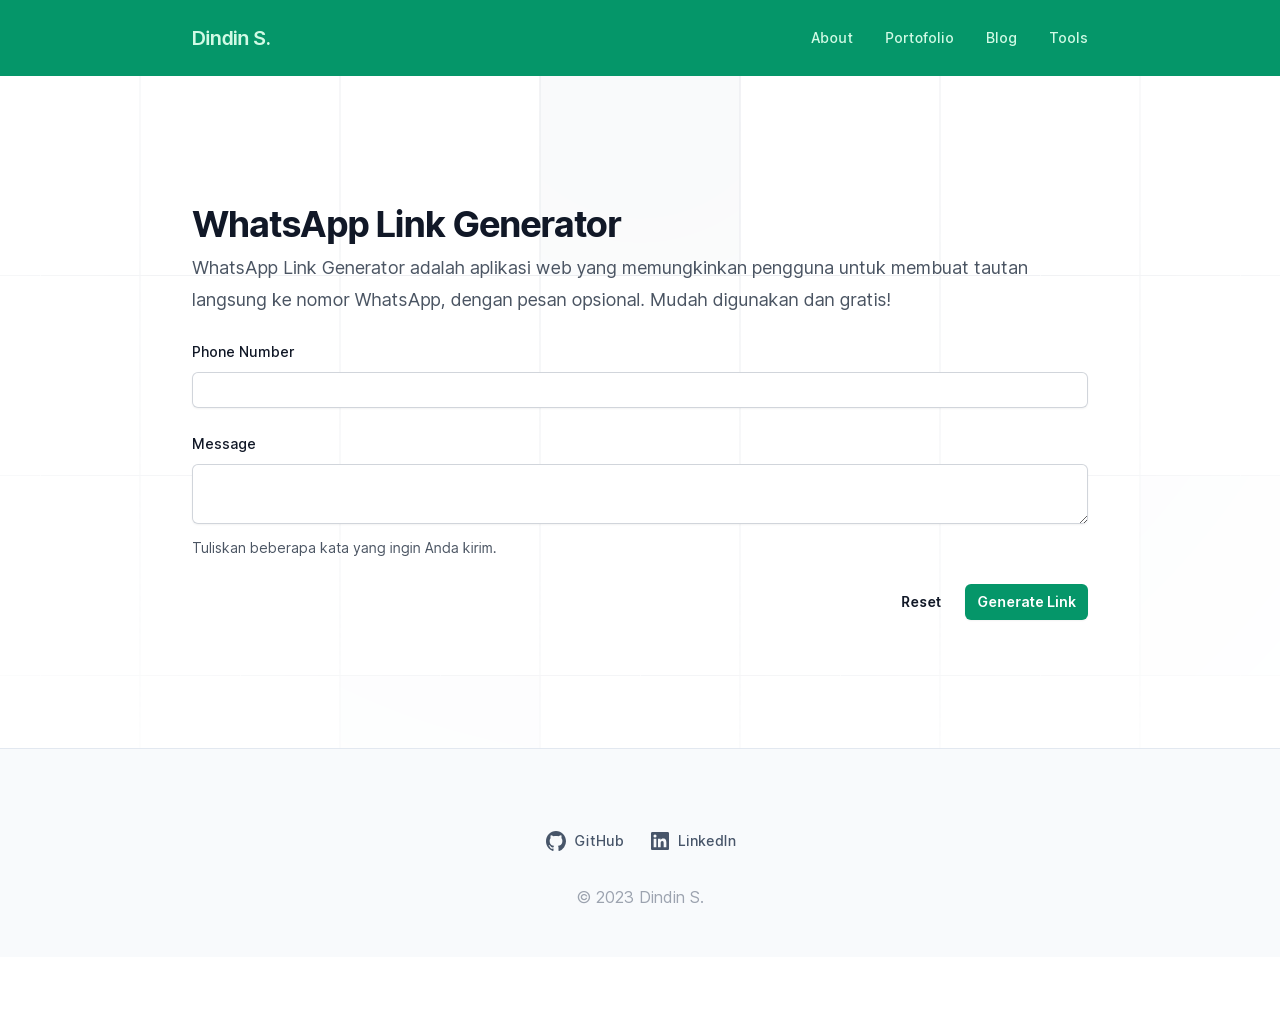 WhatsApp link generator by Dindin Solehudin